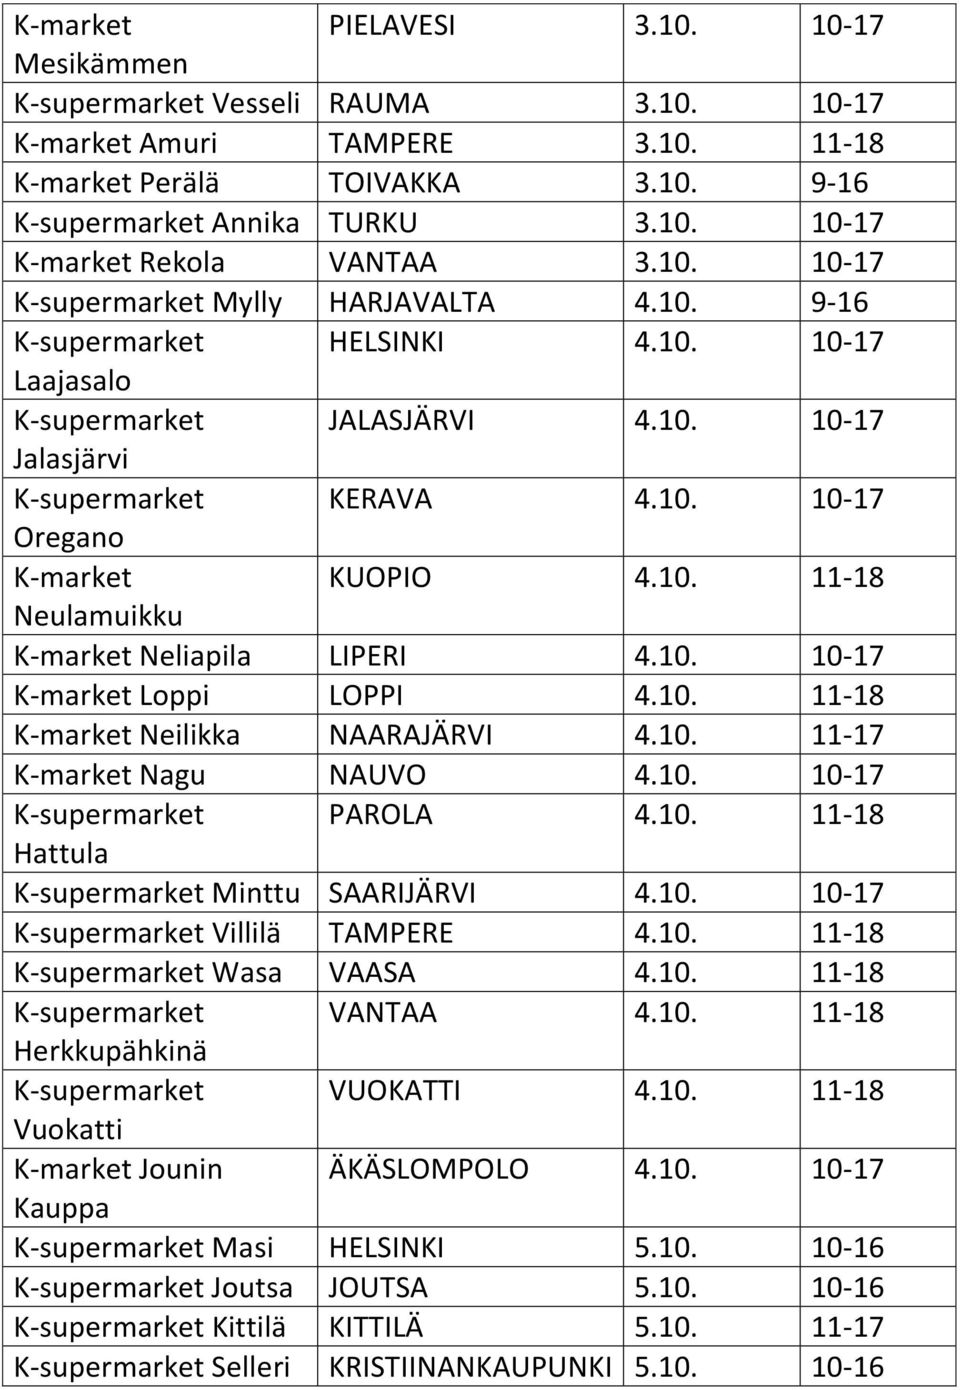 10. 11-18 Neulamuikku K-market Neliapila LIPERI 4.10. 10-17 K-market Loppi LOPPI 4.10. 11-18 K-market Neilikka NAARAJÄRVI 4.10. 11-17 K-market Nagu NAUVO 4.10. 10-17 K-supermarket PAROLA 4.10. 11-18 Hattula K-supermarket Minttu SAARIJÄRVI 4.